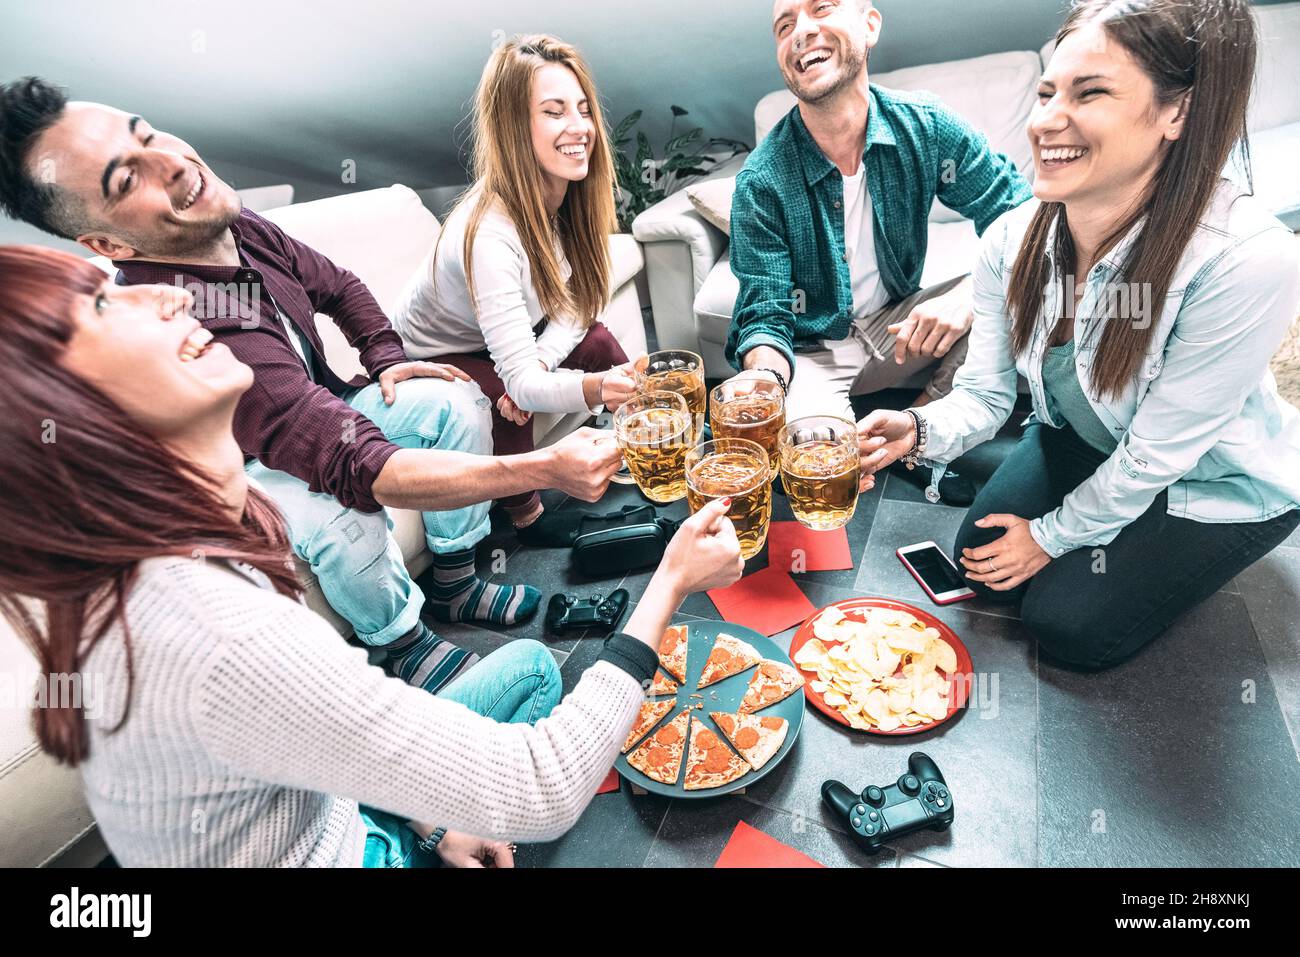 Giovani amici milleniali che mangiano la pizza a casa dopo l'università - concetto di amicizia con gli studenti che si divertono a divertirsi insieme Foto Stock